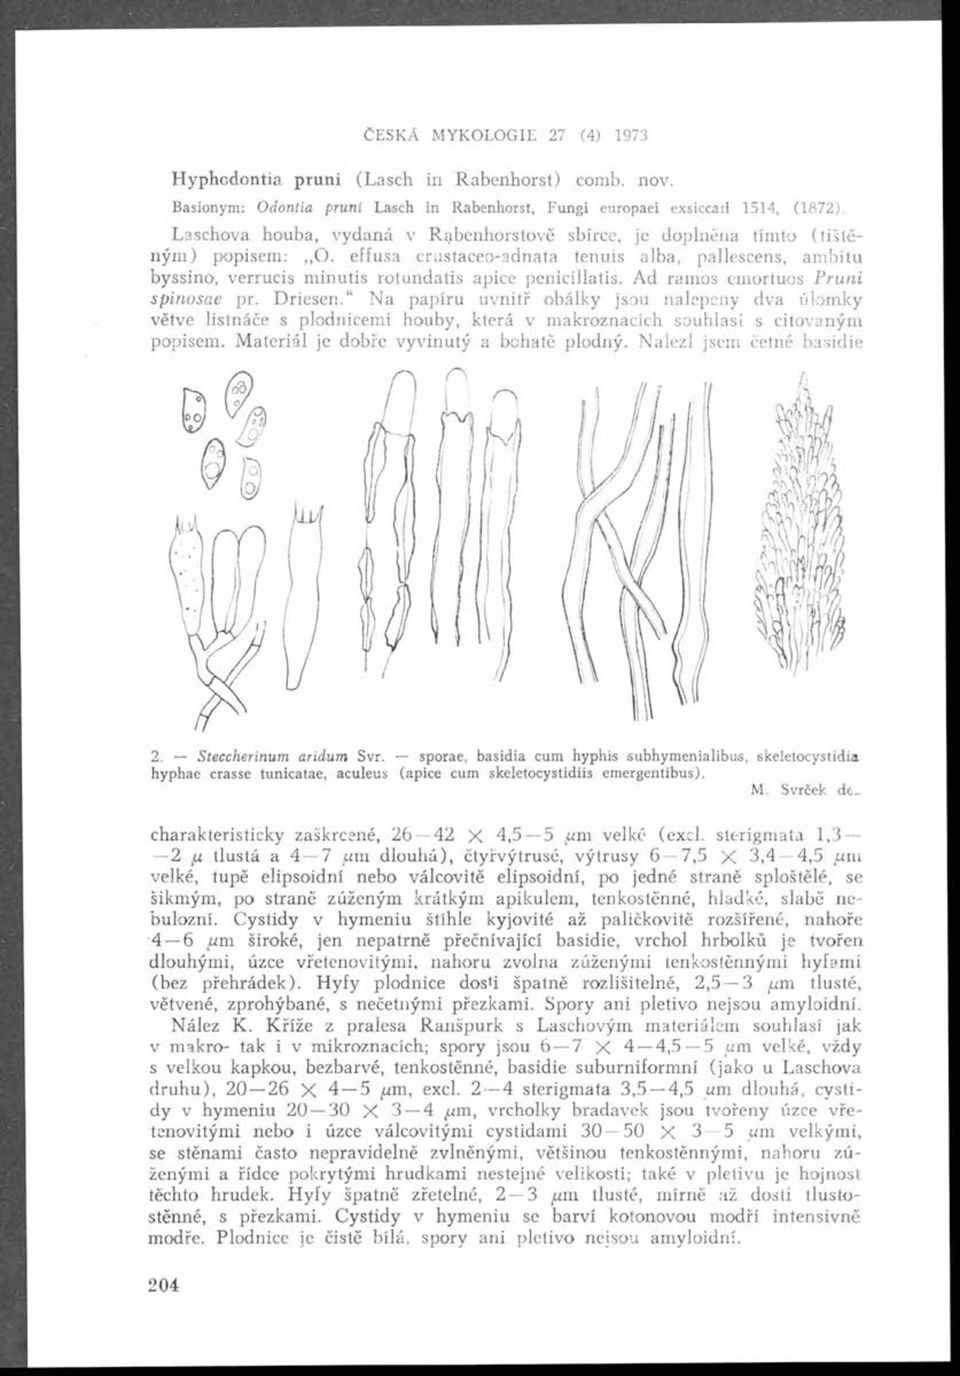 effusa crustaceo-adnata tenuis alba, pallescens, ambitu byssino, verrucis minutis rotundatis apice penicillatis. Ad ramos emortuos Pruni B sp in osae pr. D riesen.